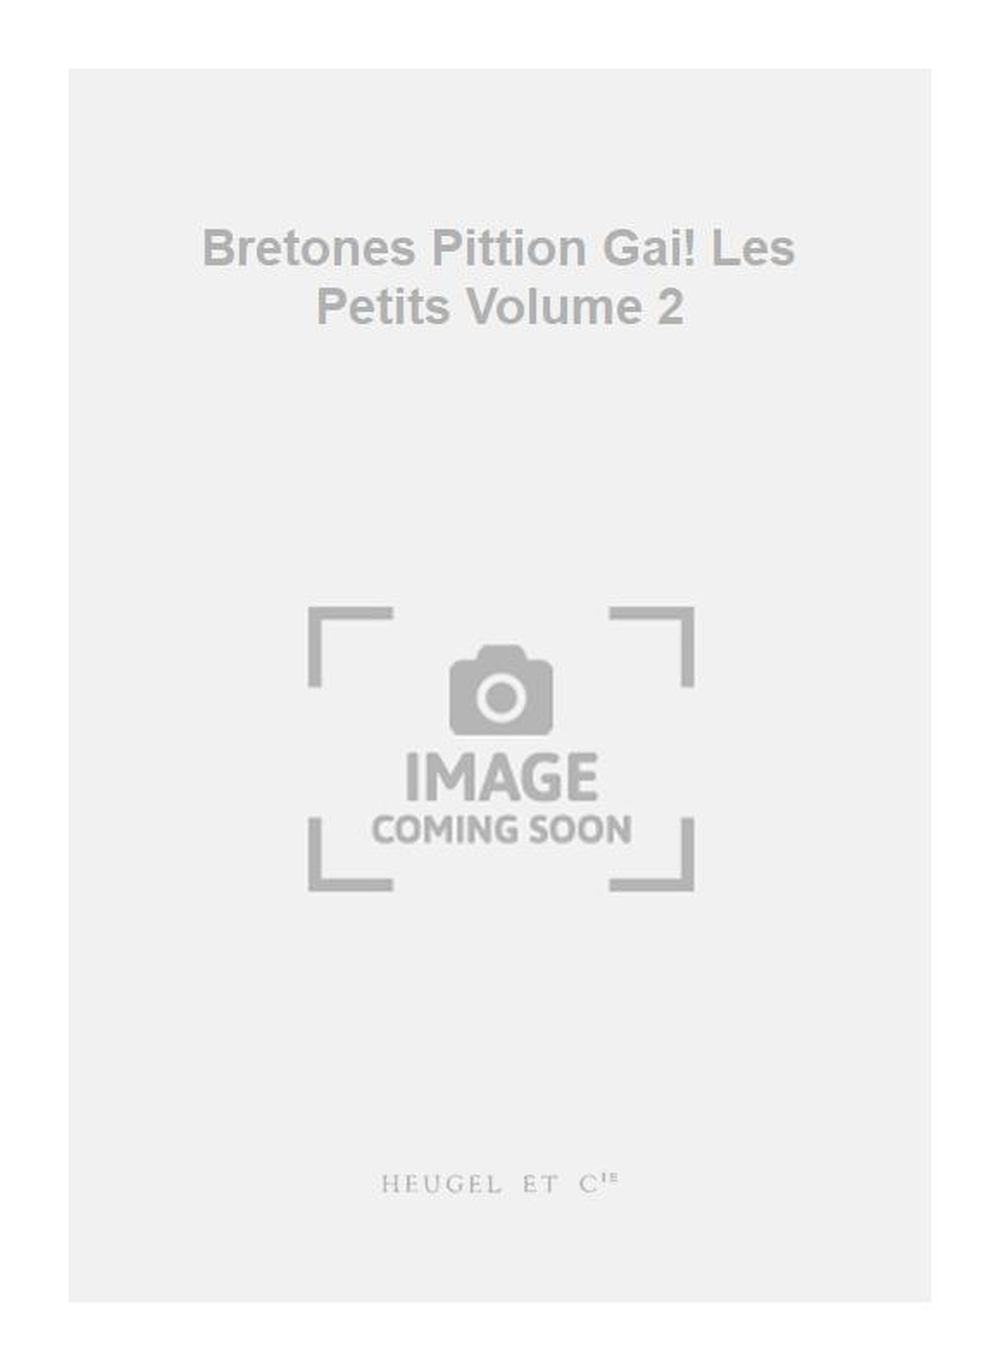 Bretones Pittion: Bretones Pittion Gai! Les Petits Volume 2